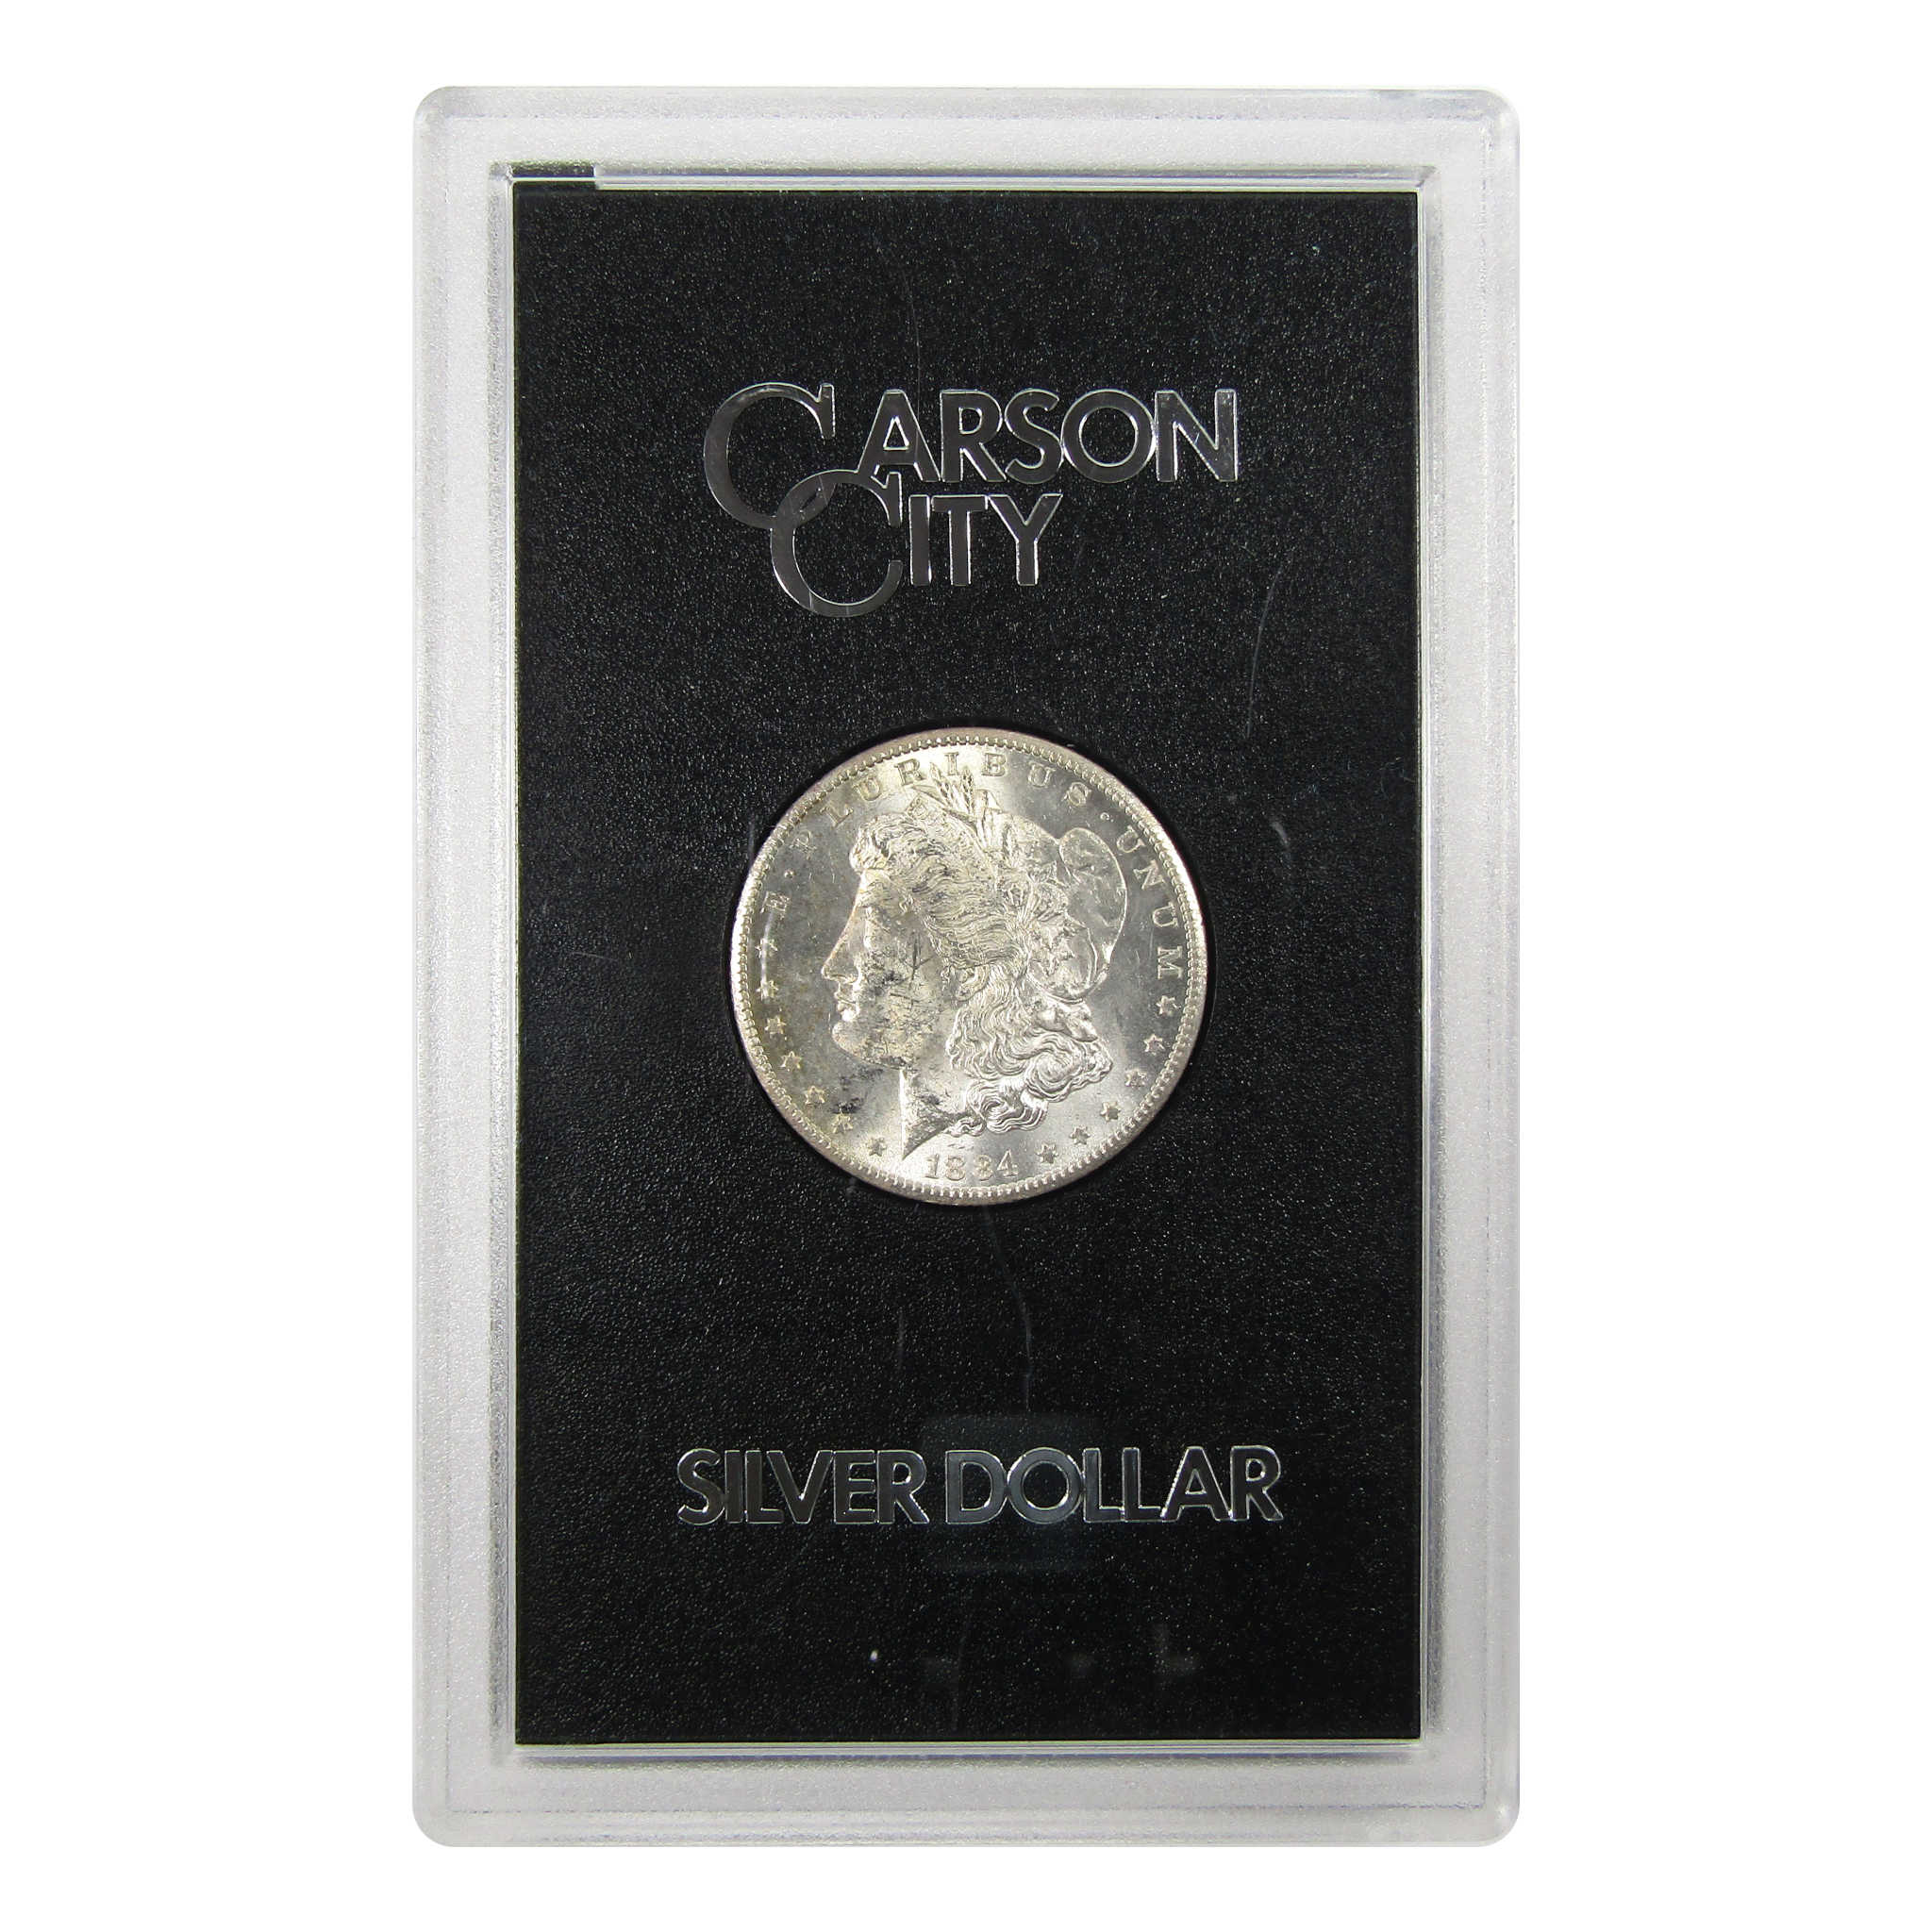 1884 CC GSA Morgan Dollar BU Uncirculated Silver $1 Coin SKU:I9440 - Morgan coin - Morgan silver dollar - Morgan silver dollar for sale - Profile Coins &amp; Collectibles